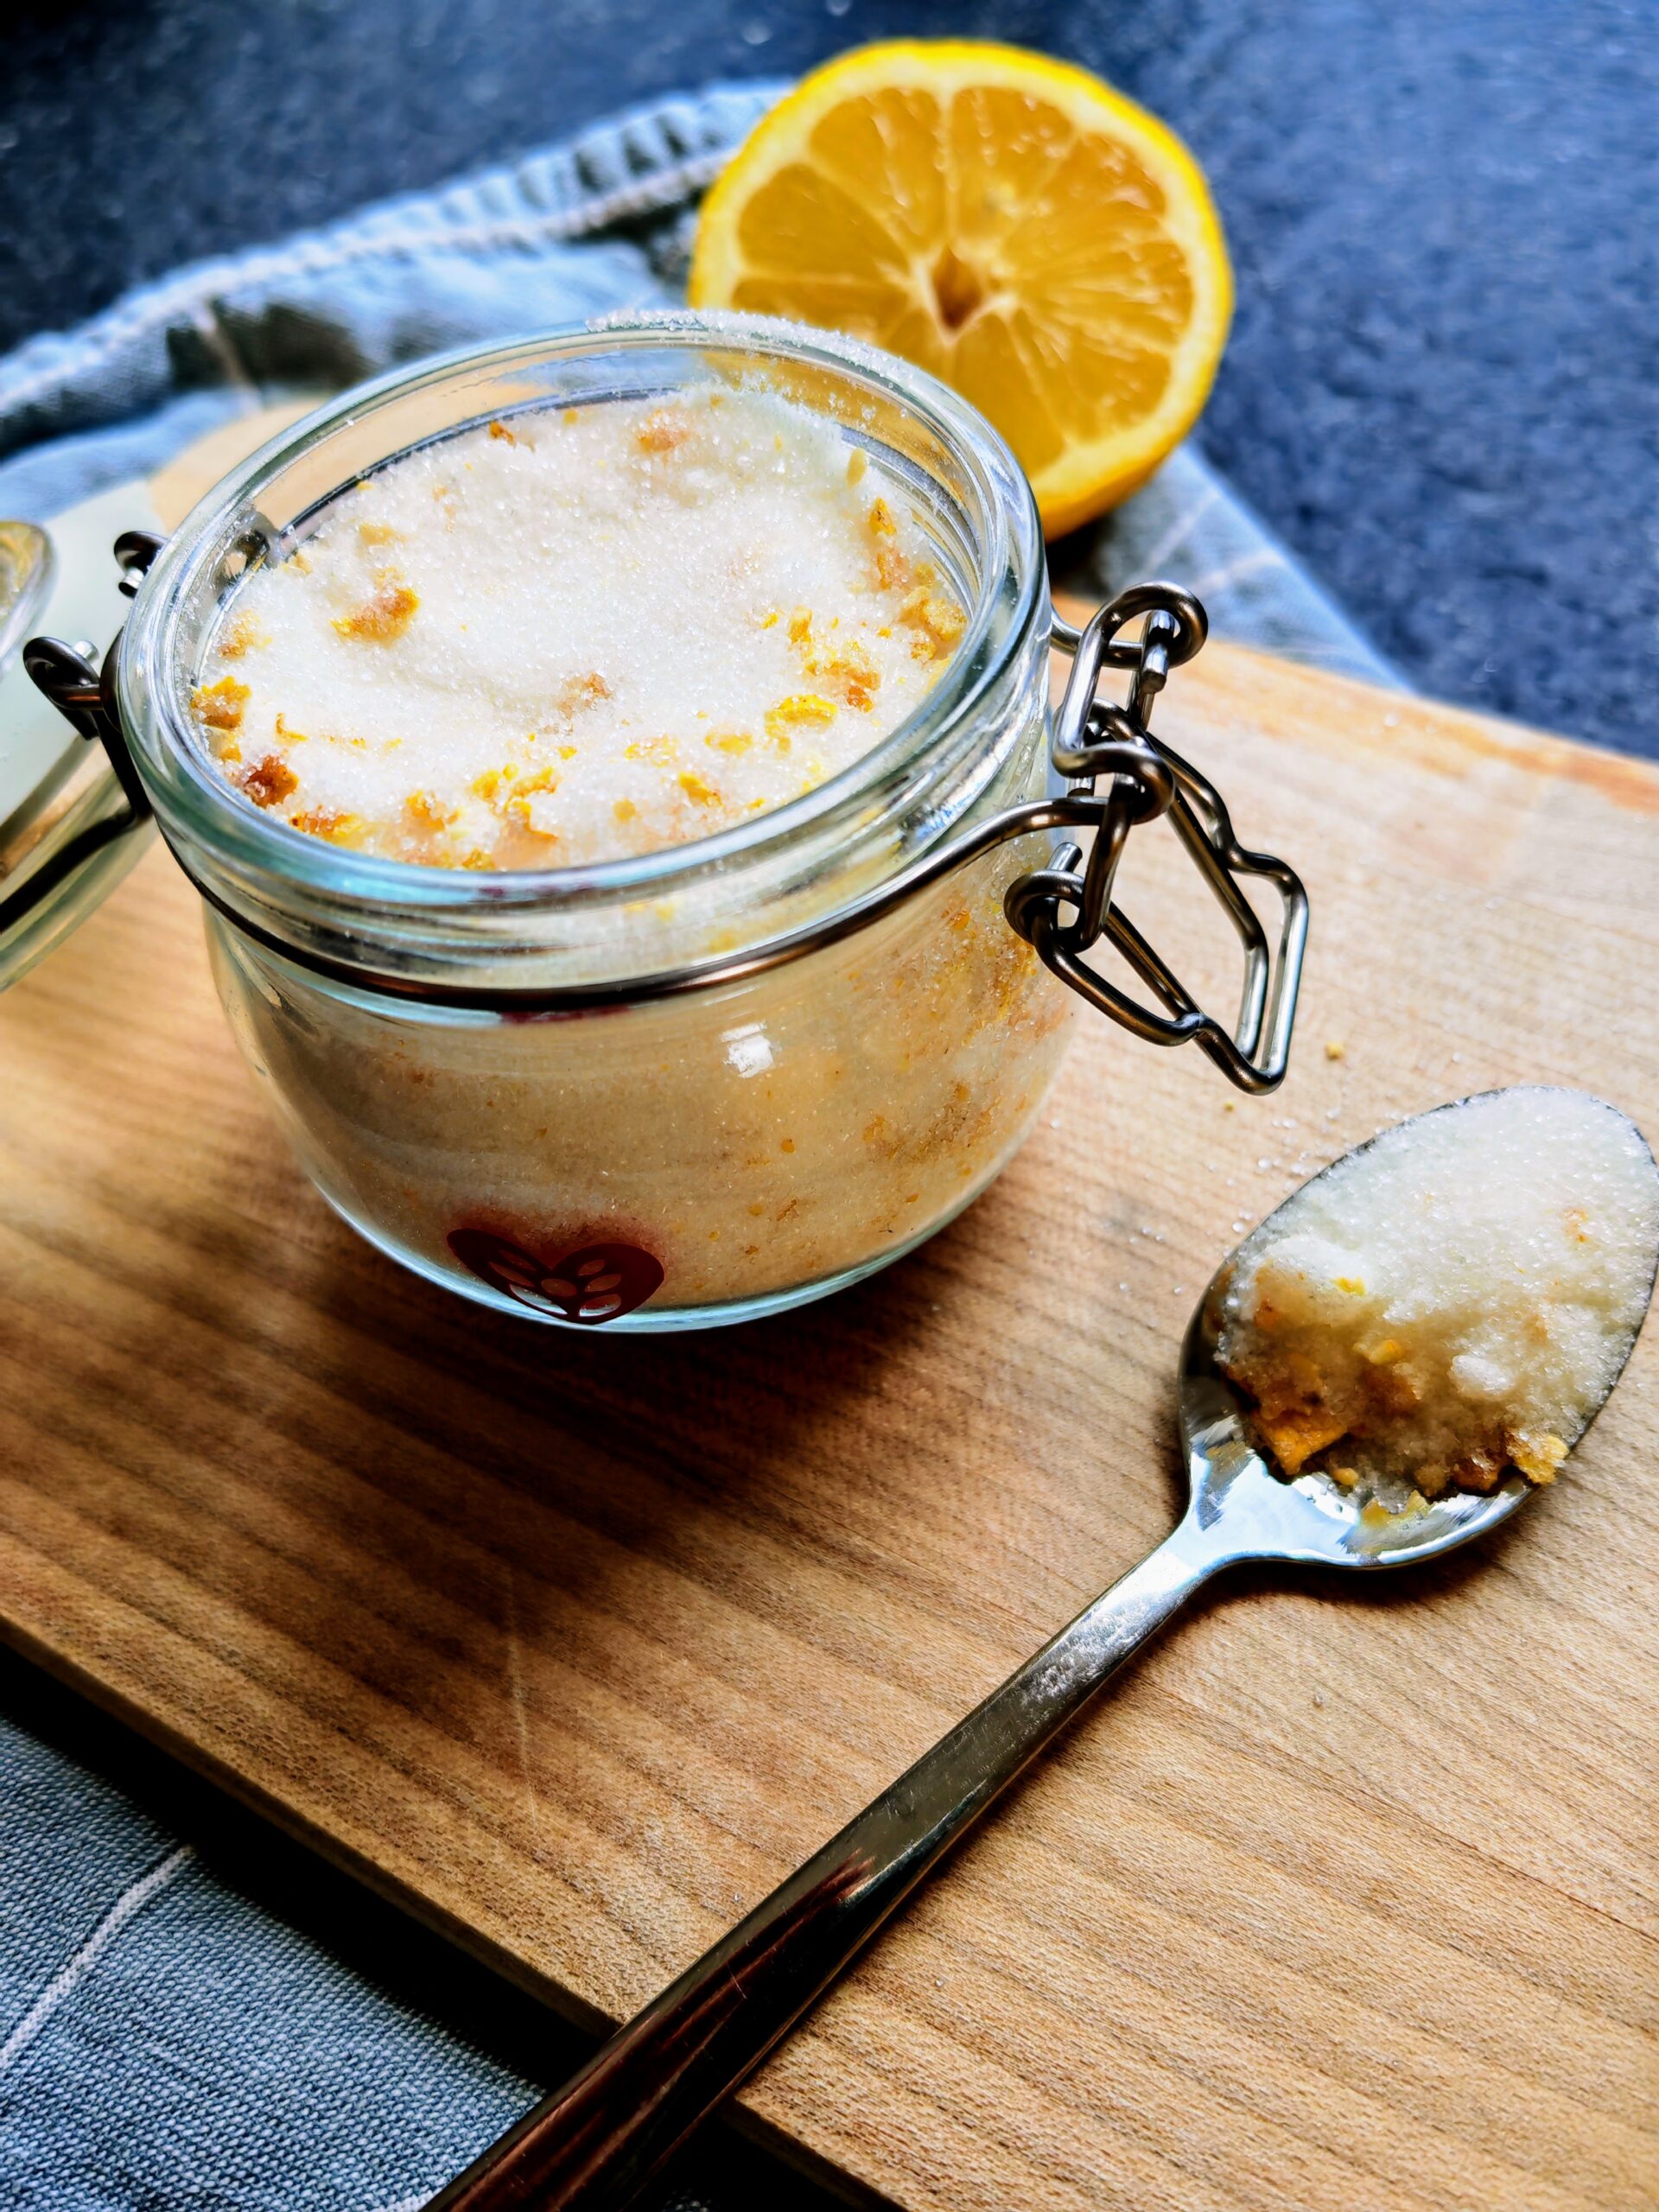 So einfach kannst du Zitronenzucker selbst zubereiten - hier findest du ein einfaches schnelles Rezept. Vegan und günstig! #veganerezepte #mitliebegemacht #foodblog_de